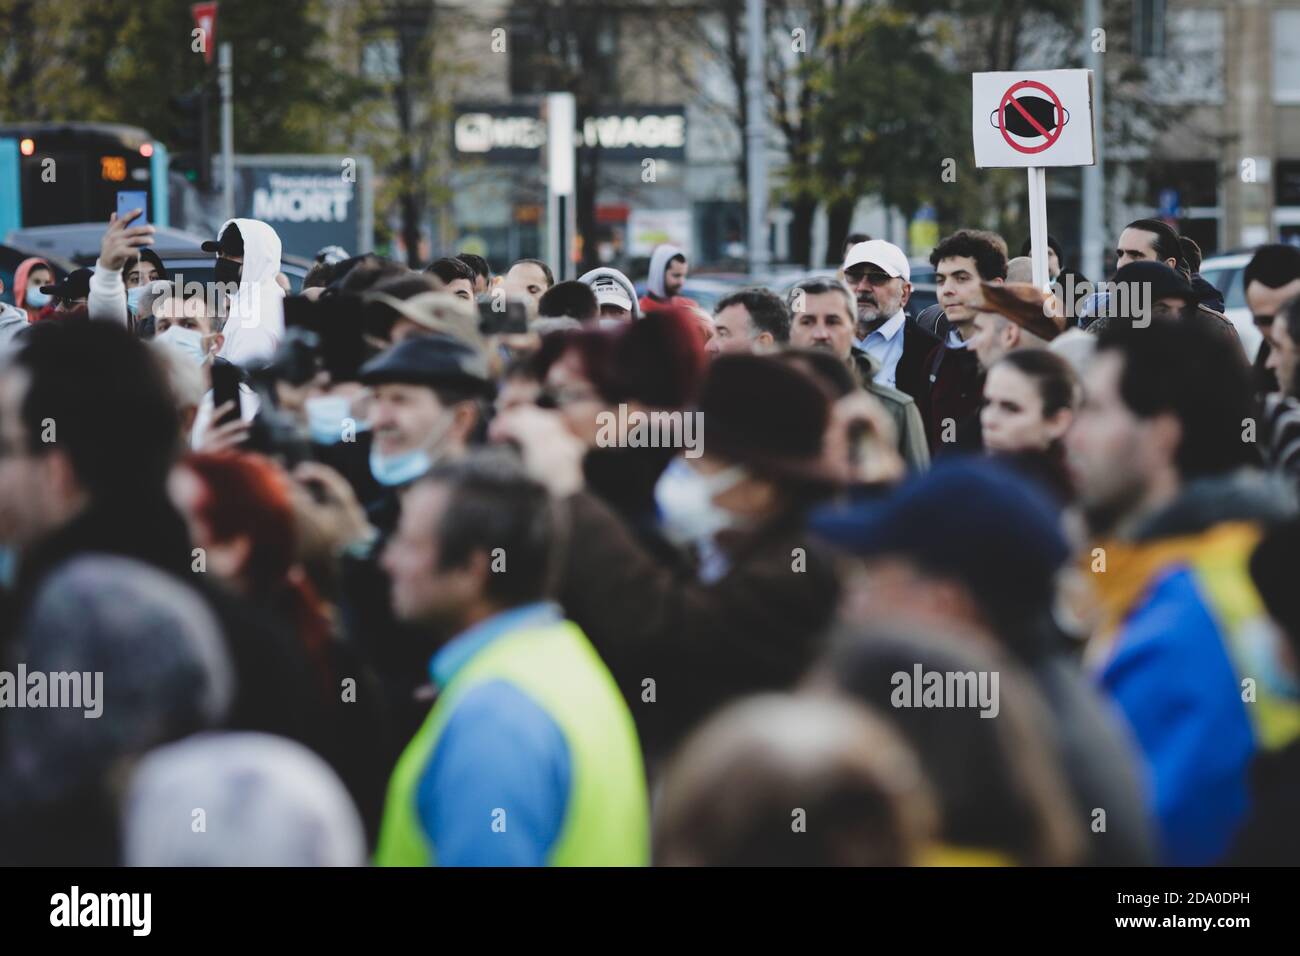 Bukarest, Rumänien - 8. November 2020: Während einer politischen Kundgebung zeigen die Menschen Gesichtsschutzmasken mit Transparenten. Stockfoto